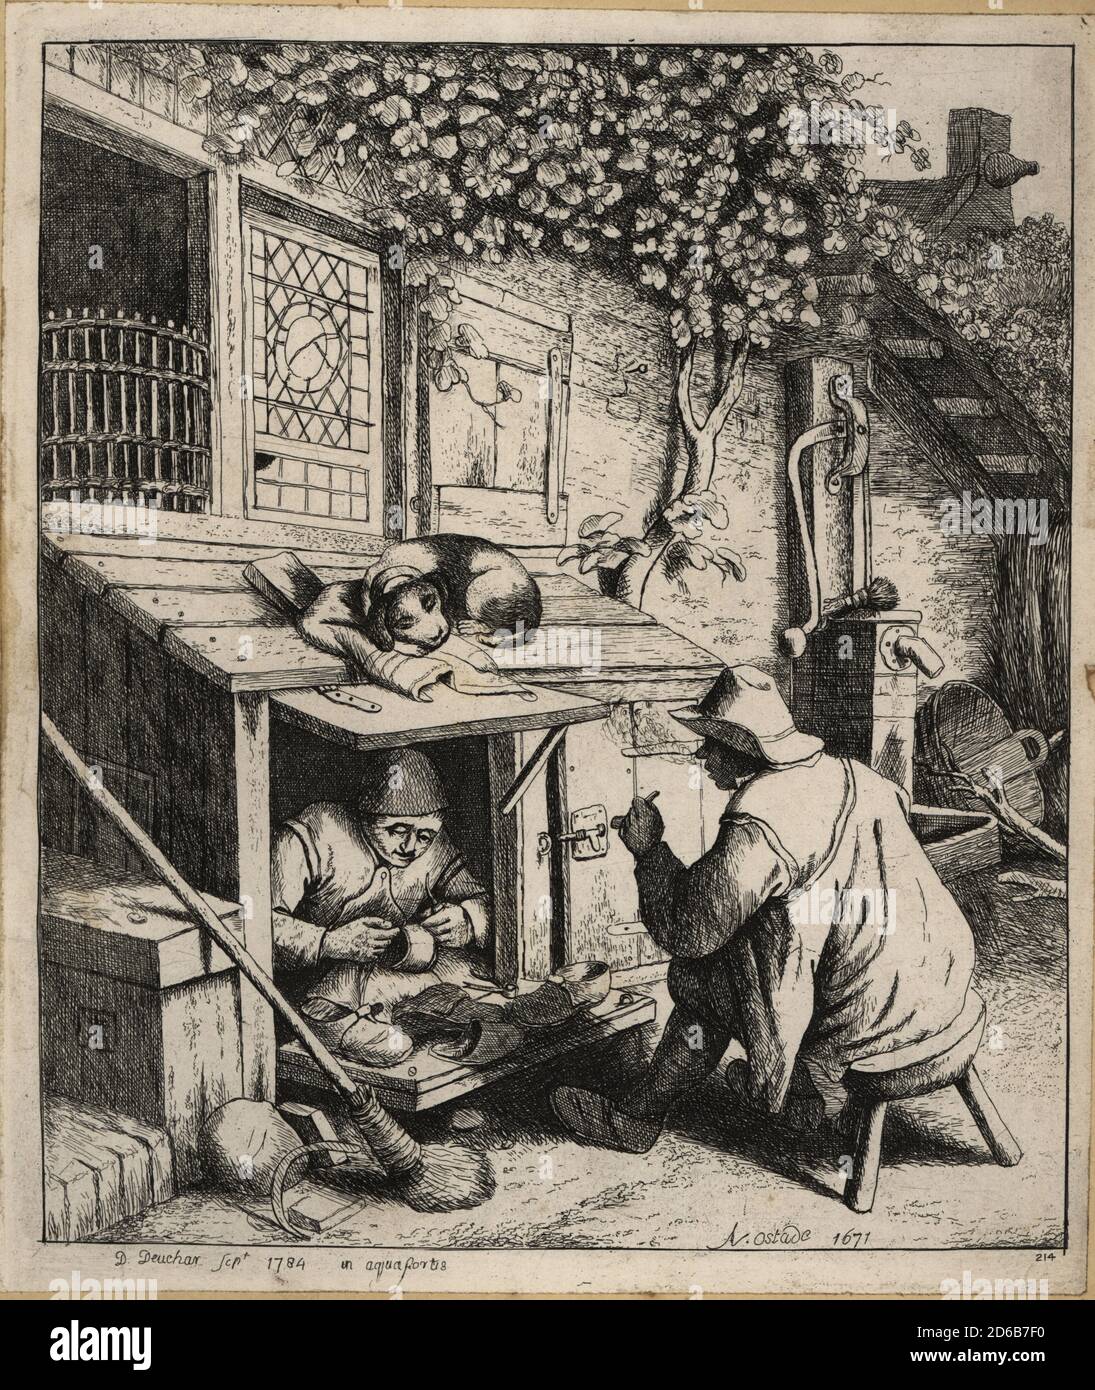 Zapatero holandés del siglo XVII en una pequeña tienda frente a su casa. El  zapatero repara zapatos para un campesino esperando en un taburete. Un  perro dormido se encuentra en el techo